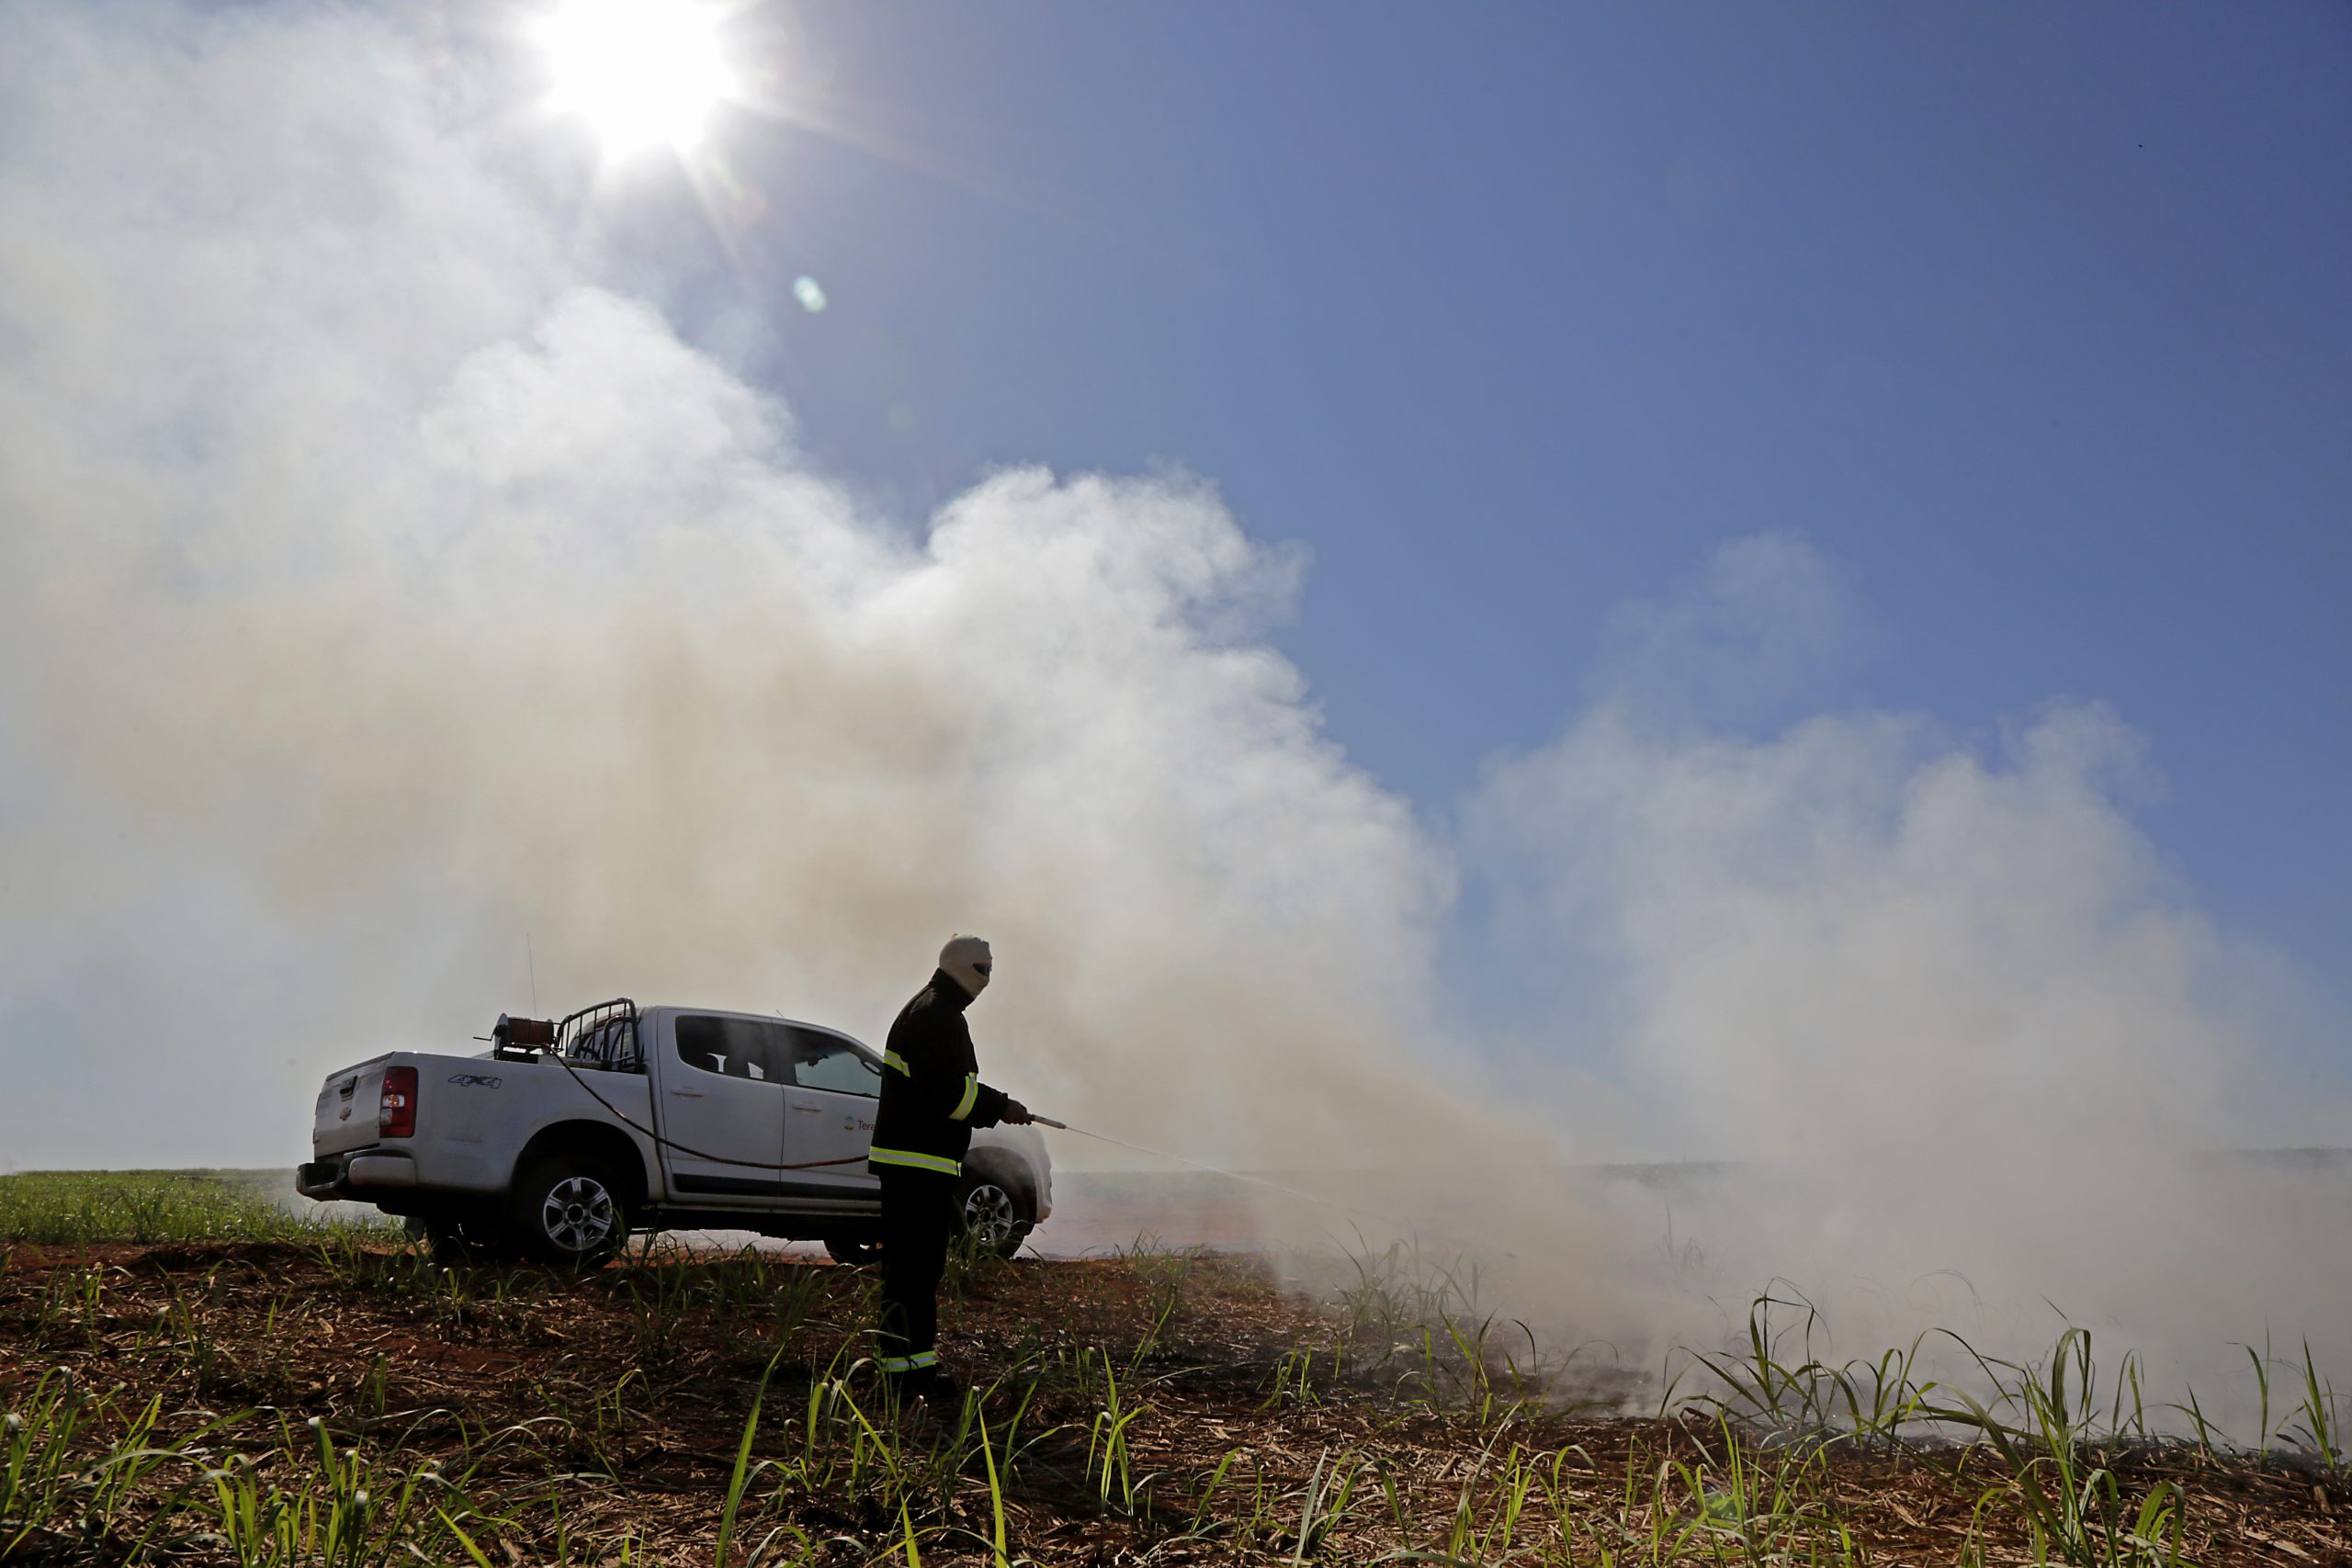 Tereos inicia campanha de conscientização para reduzir focos de incêndio em período de estiagem no noroeste paulista